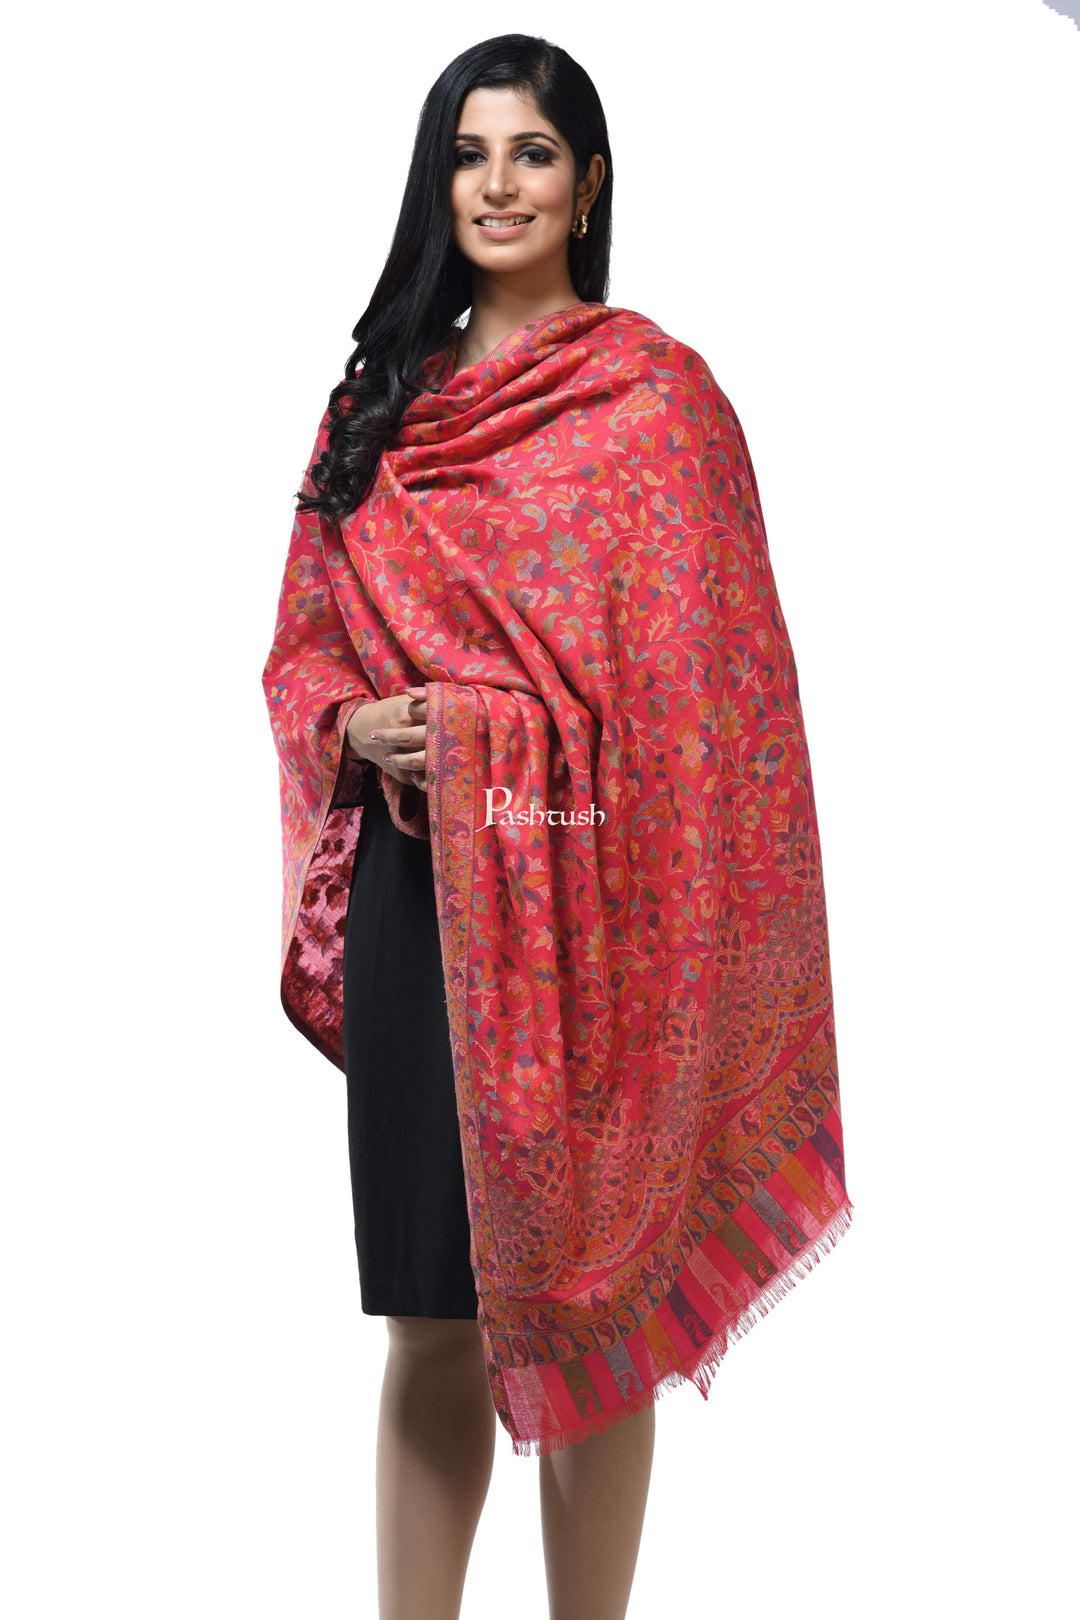 Pashwool Womens Shawls Pashwool Womens Ethnic Design Shawl, Light Weight, Soft And Warm, Pink